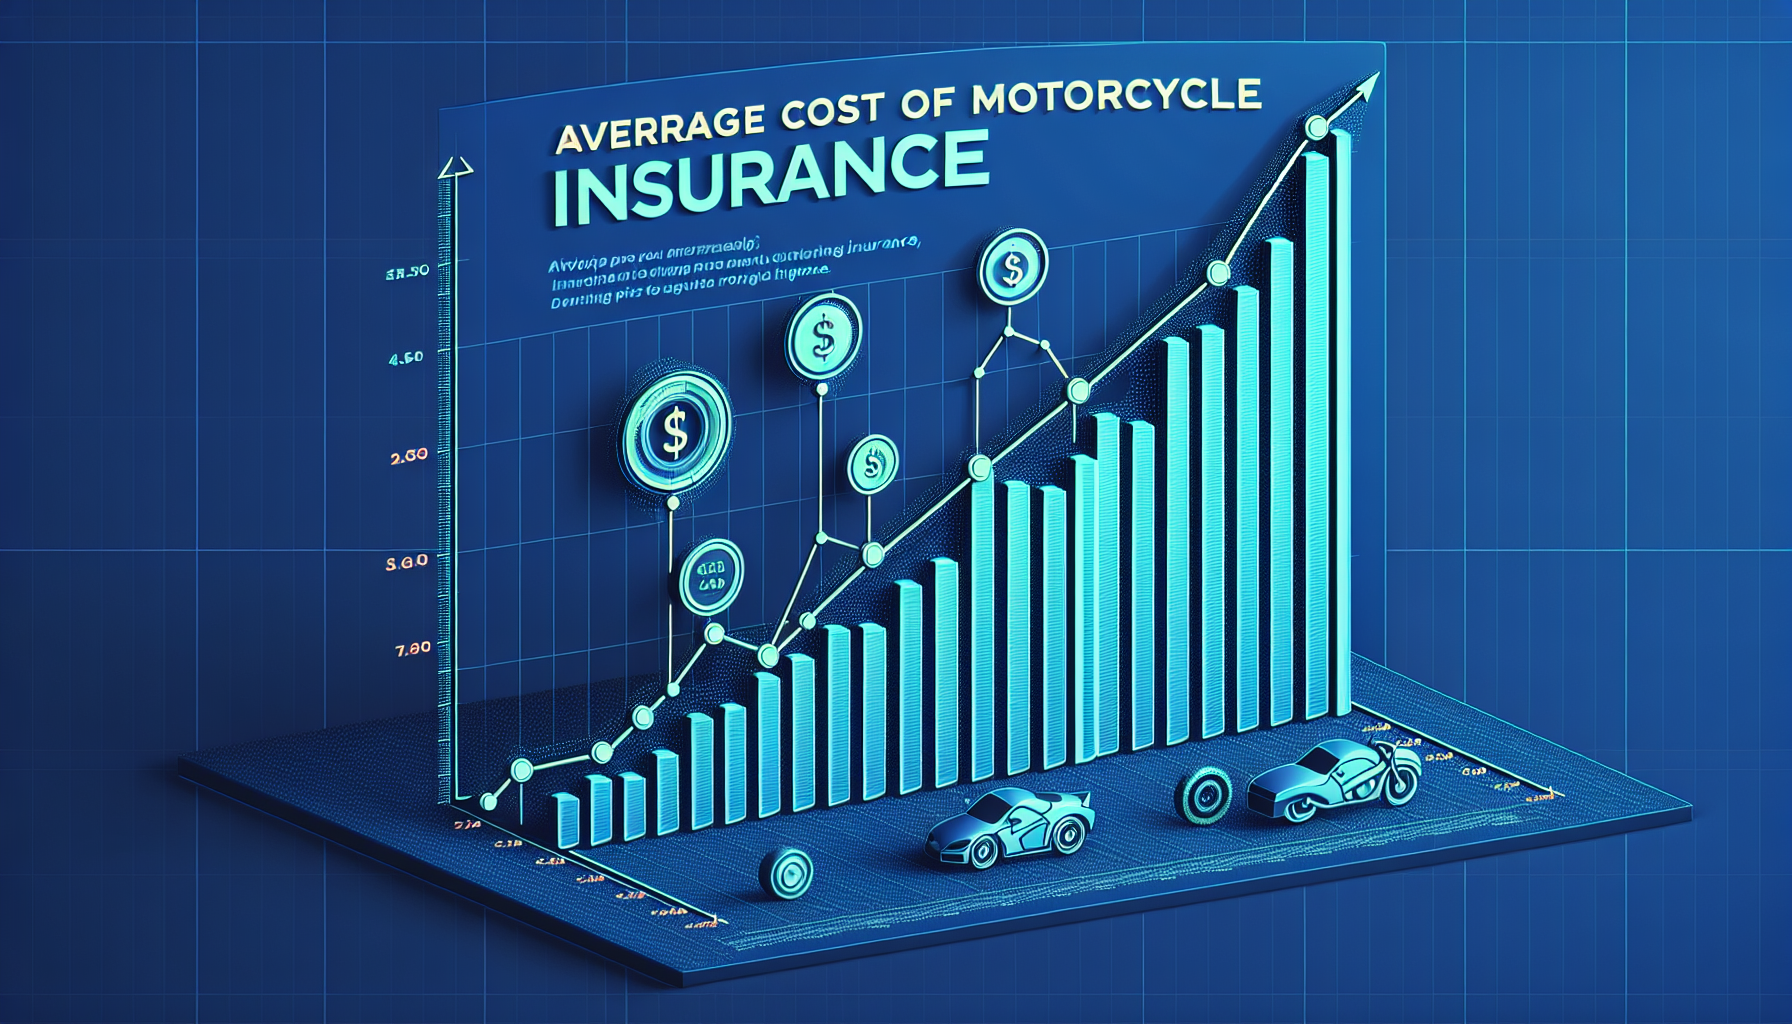 découvrez le prix moyen de l'assurance moto et comparez les offres pour trouver la meilleure couverture au meilleur prix.